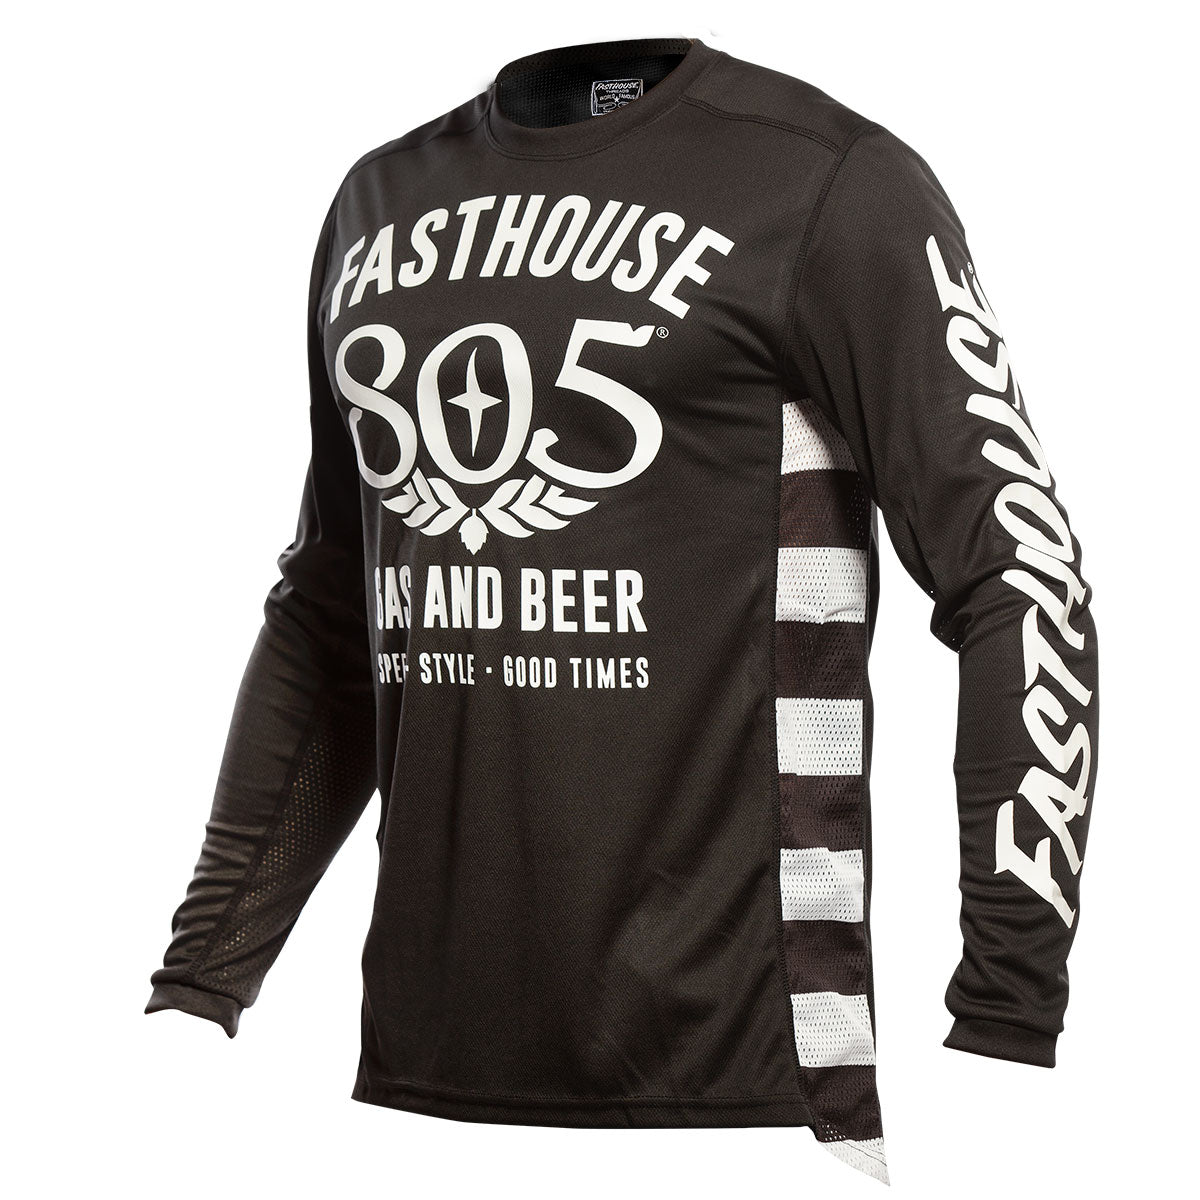 805 beer t shirt